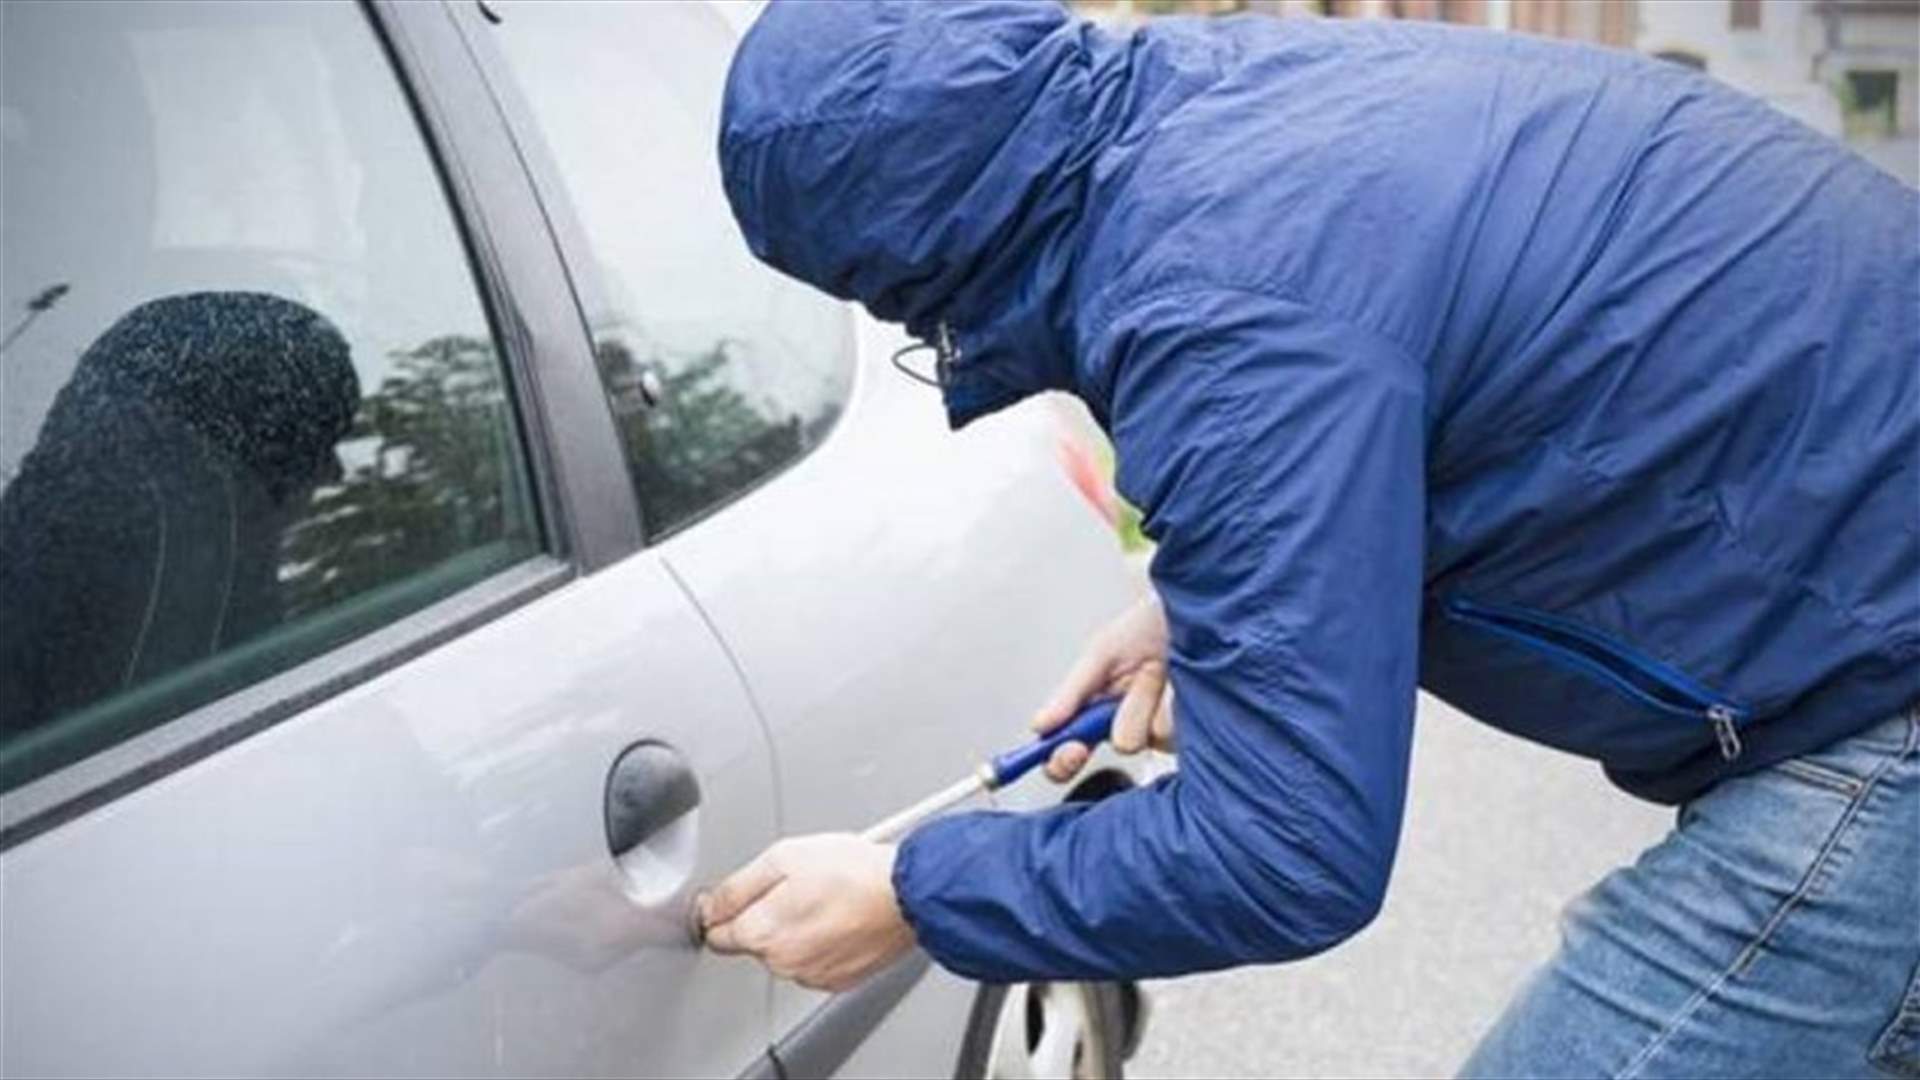 بعد عملية رصد ومتابعة... توقيف مطلوب خطير بعمليات سرقة السيارات